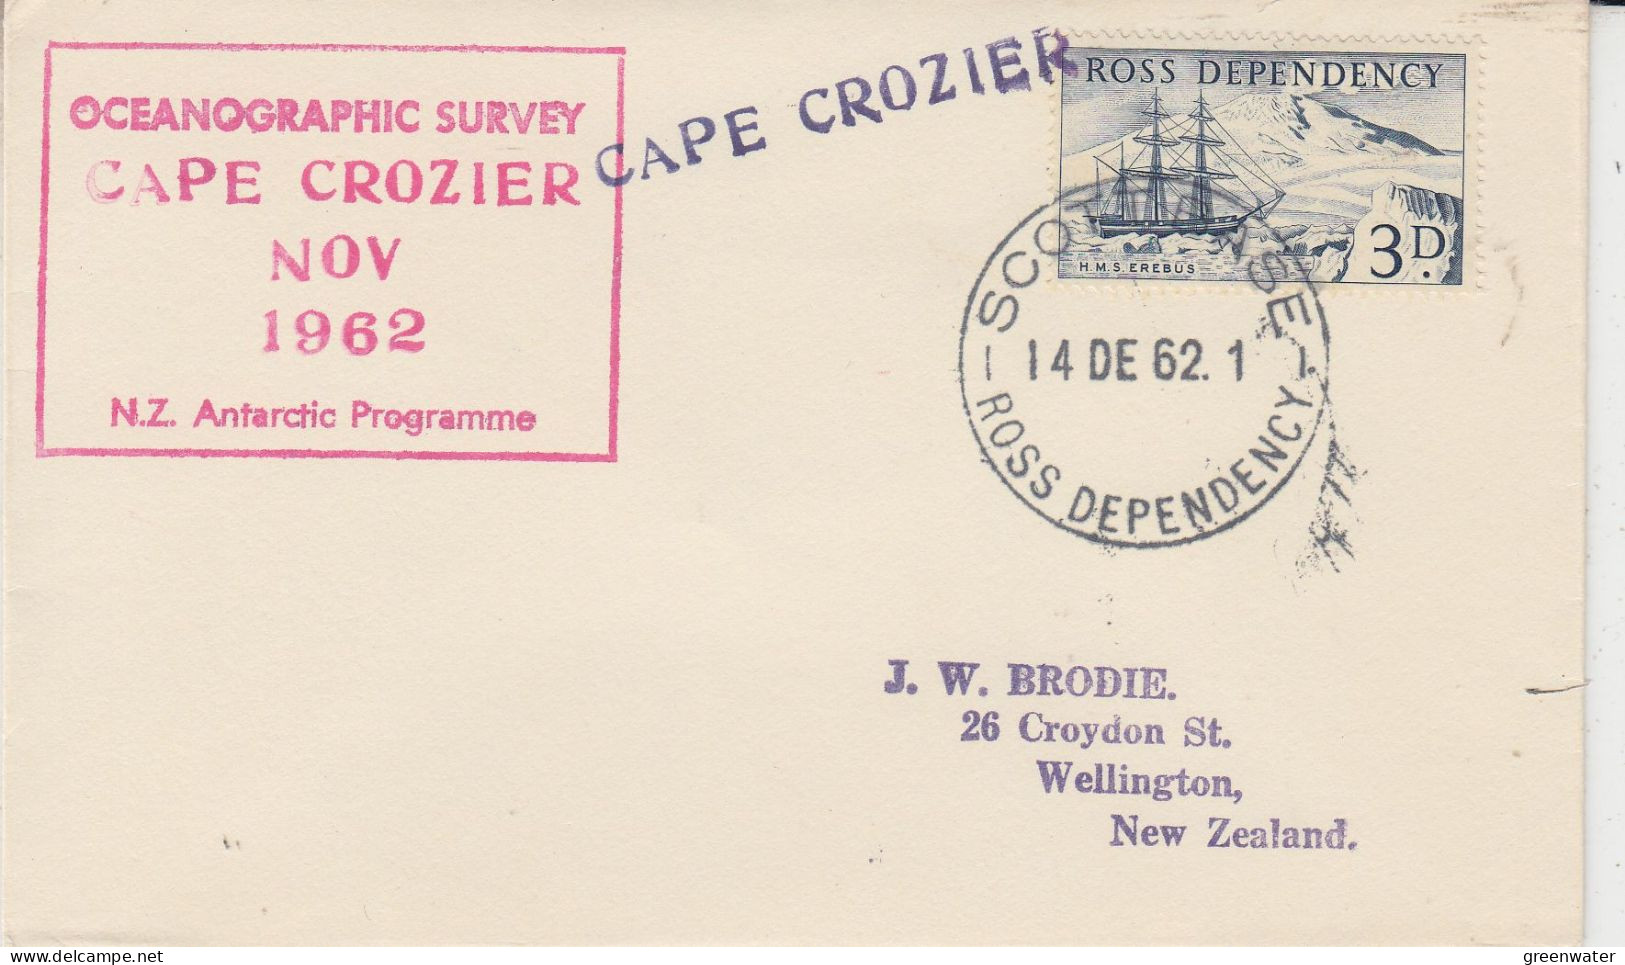 Ross Dependency Cape Crozier Ca Scott Base 14 DEC 1962 (SR186) - Onderzoeksstations